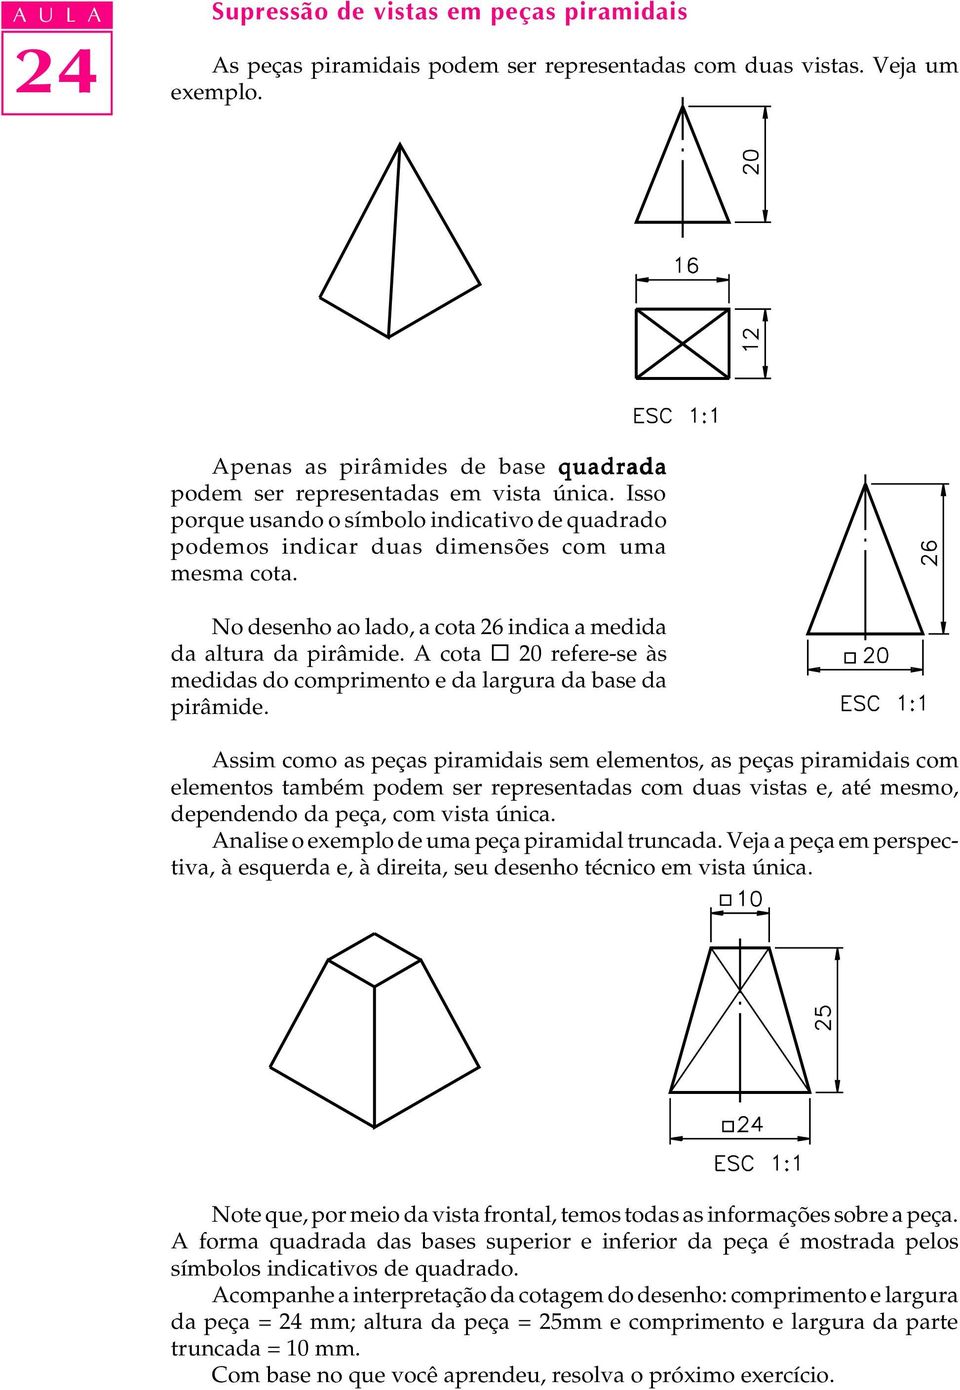 No desenho ao lado, a cota 26 indica a medida da altura da pirâmide. A cota 20 refere-se às medidas do comprimento e da largura da base da pirâmide.